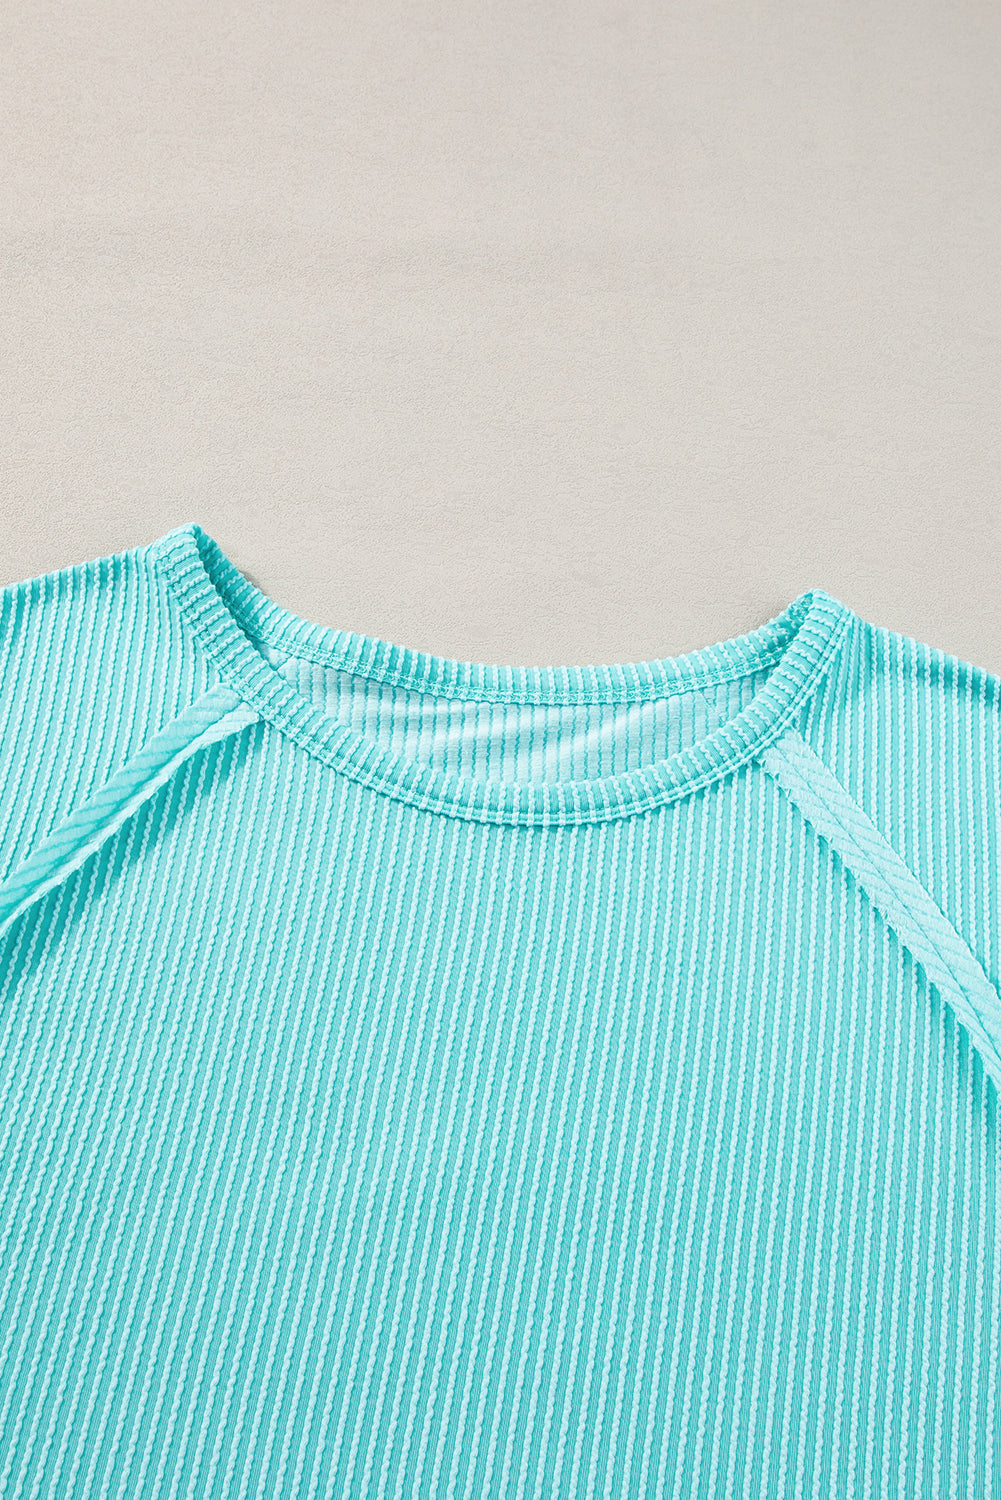 Svetlo modra majica velikih velikosti z izpostavljenimi šivi in ​​rebrami za prosti čas